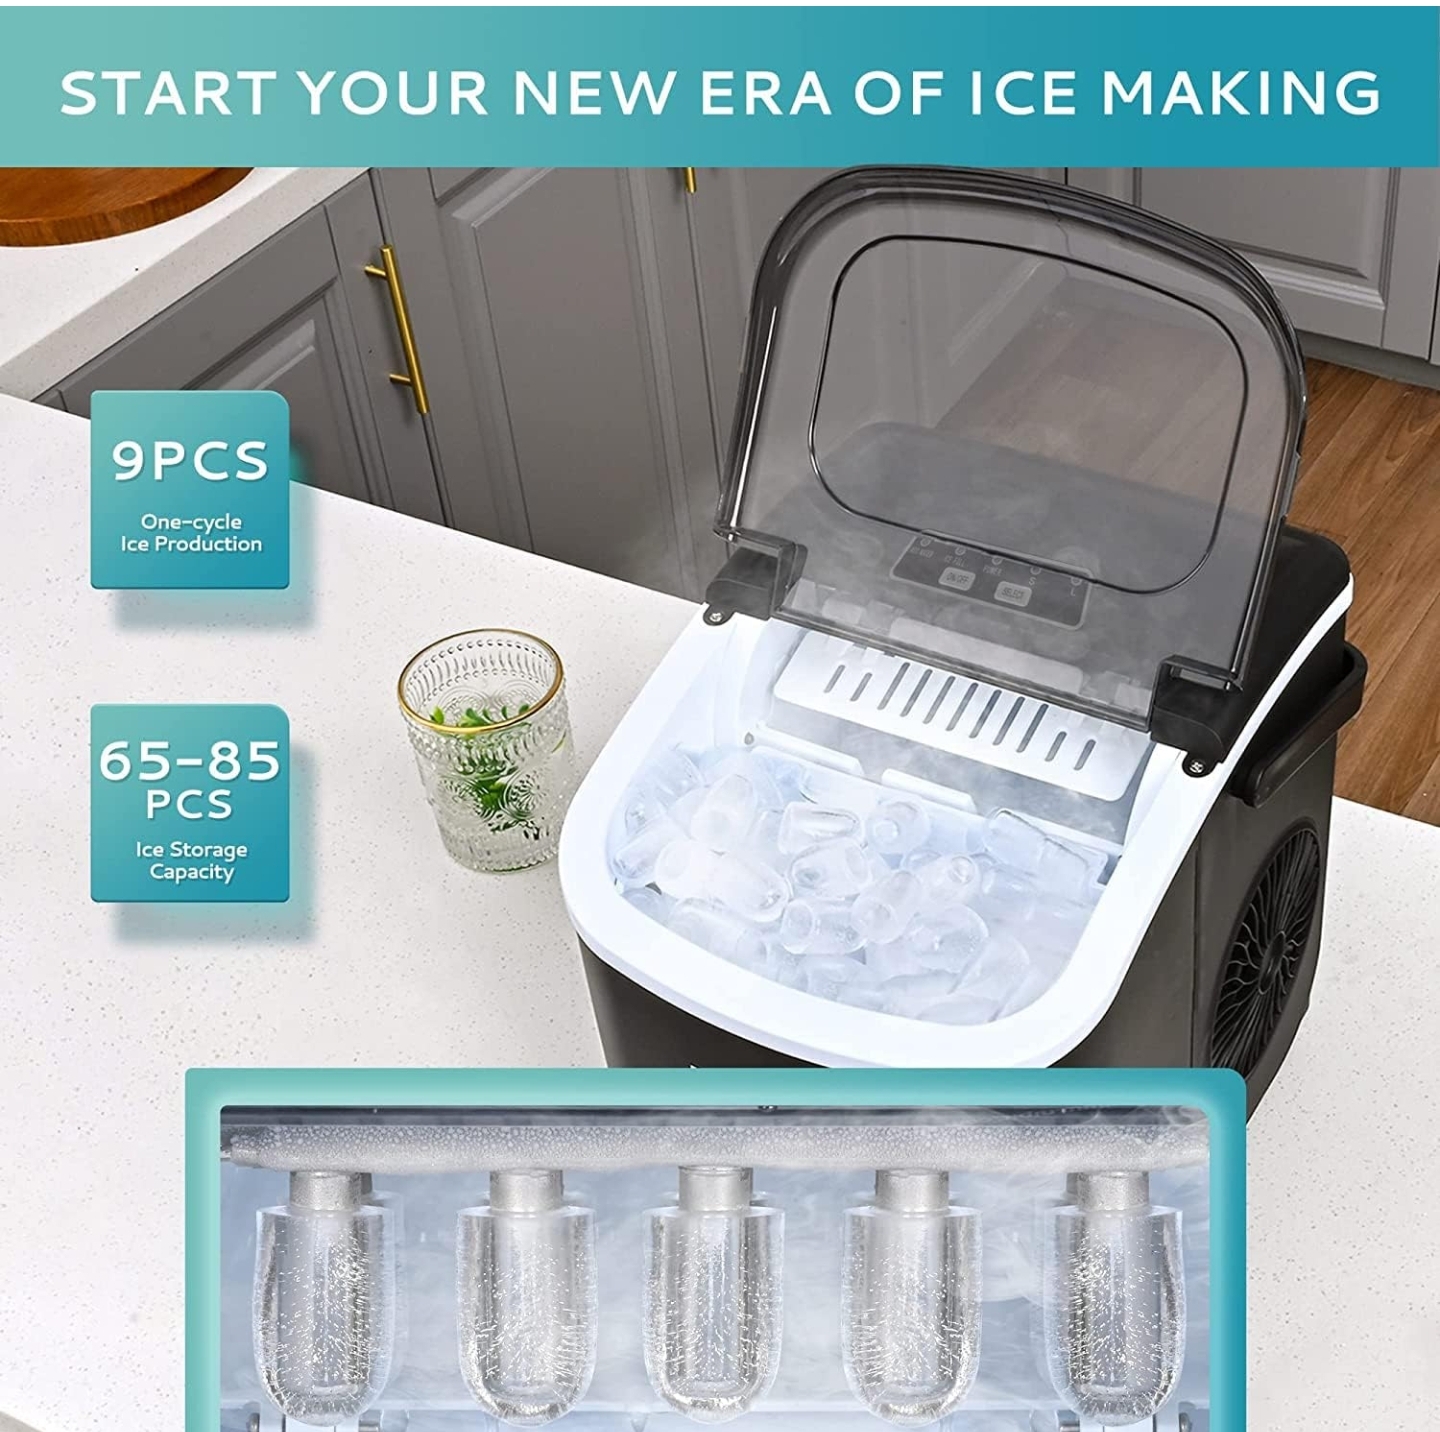 دستگاه یخ ساز HICON یخ ساز گلوله ای 33 پوندی در 24 ساعت، با دسته و عملکرد تمیز کردن خودکار، میز با قاشق یخ برای آشپزخانه خانه، کافه ها، قهوه فروشی ها